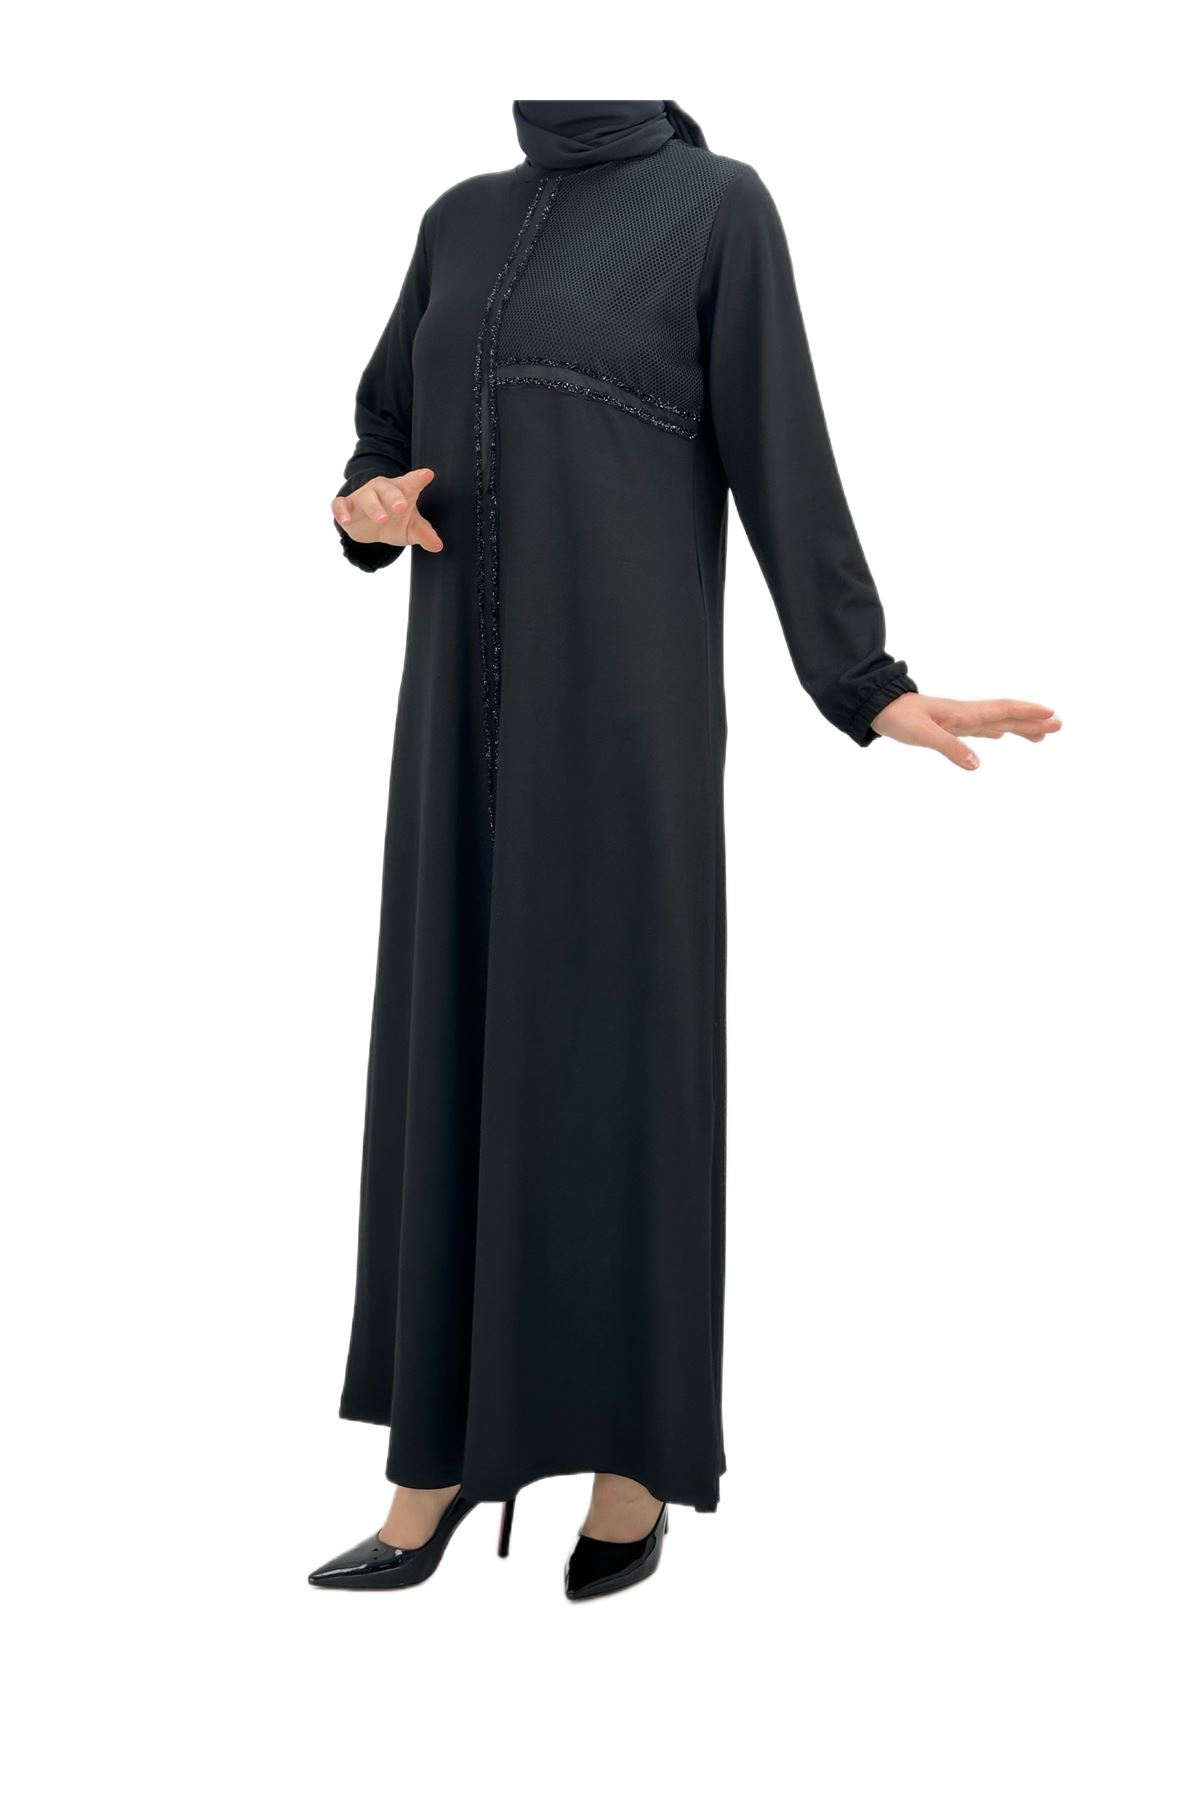 OTW597 Fileli Elbise Siyah